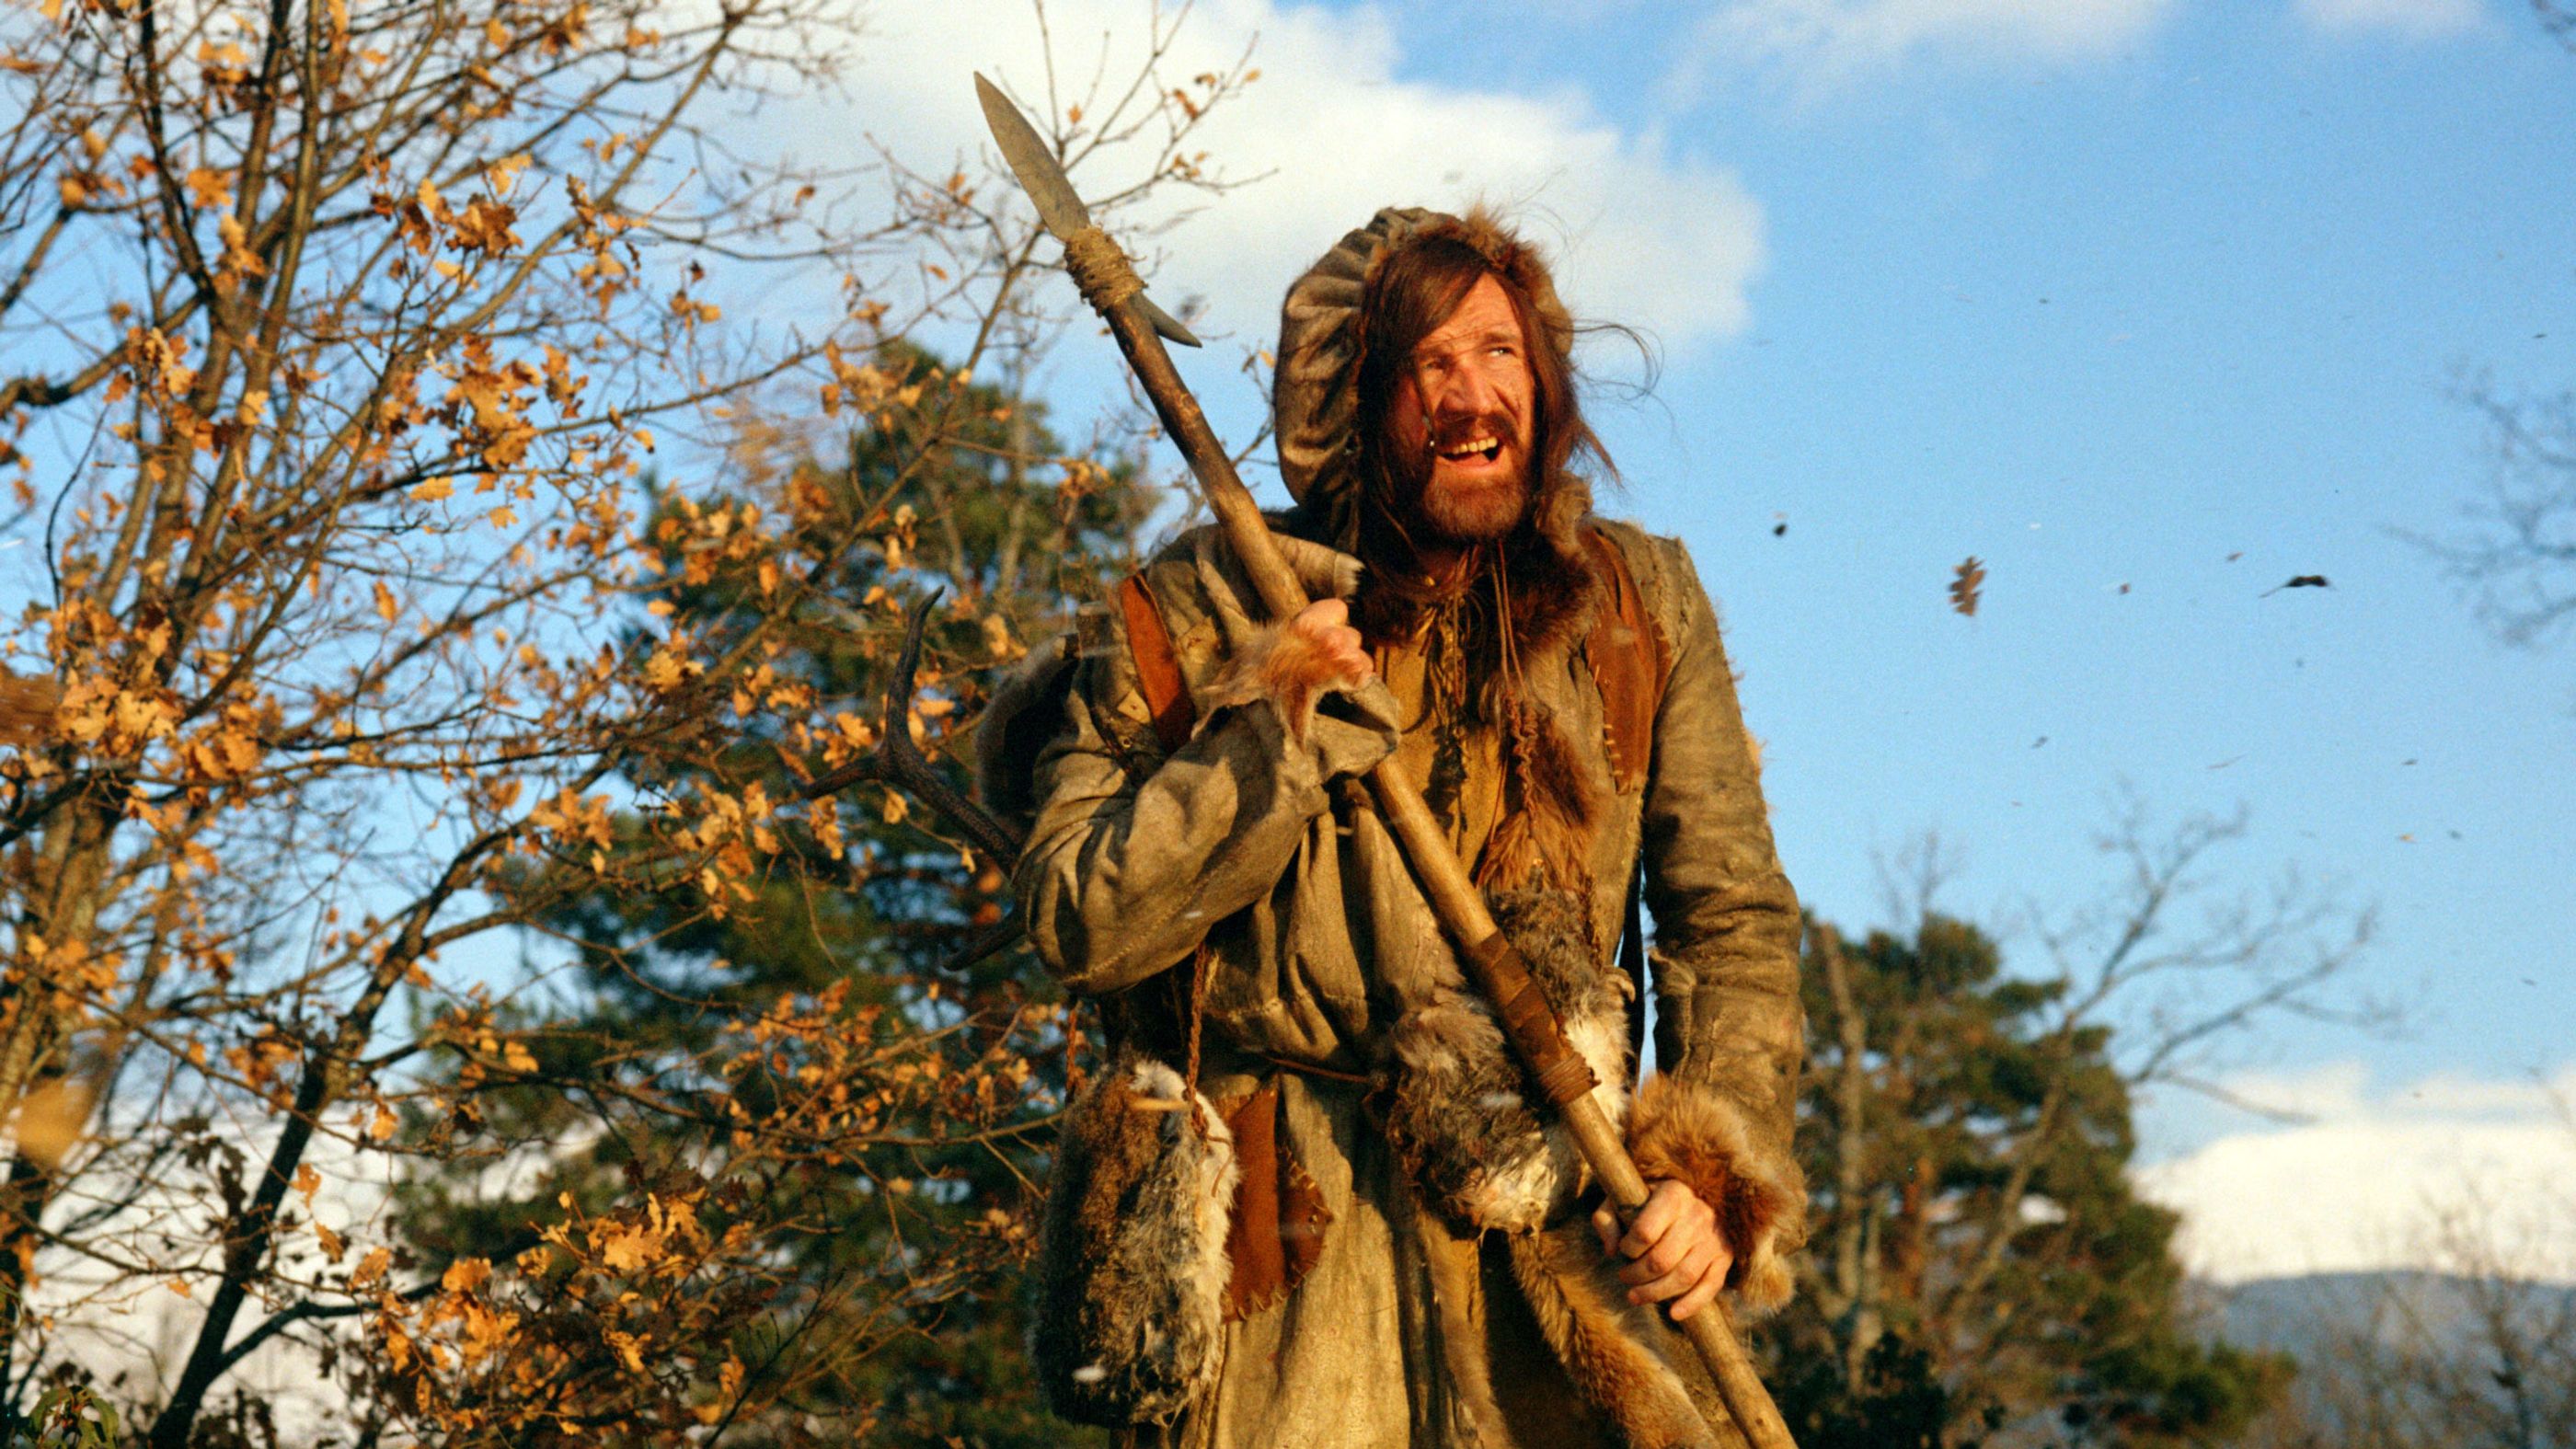 Man in the Wilderness (1971) – Adventure, Drama, Western